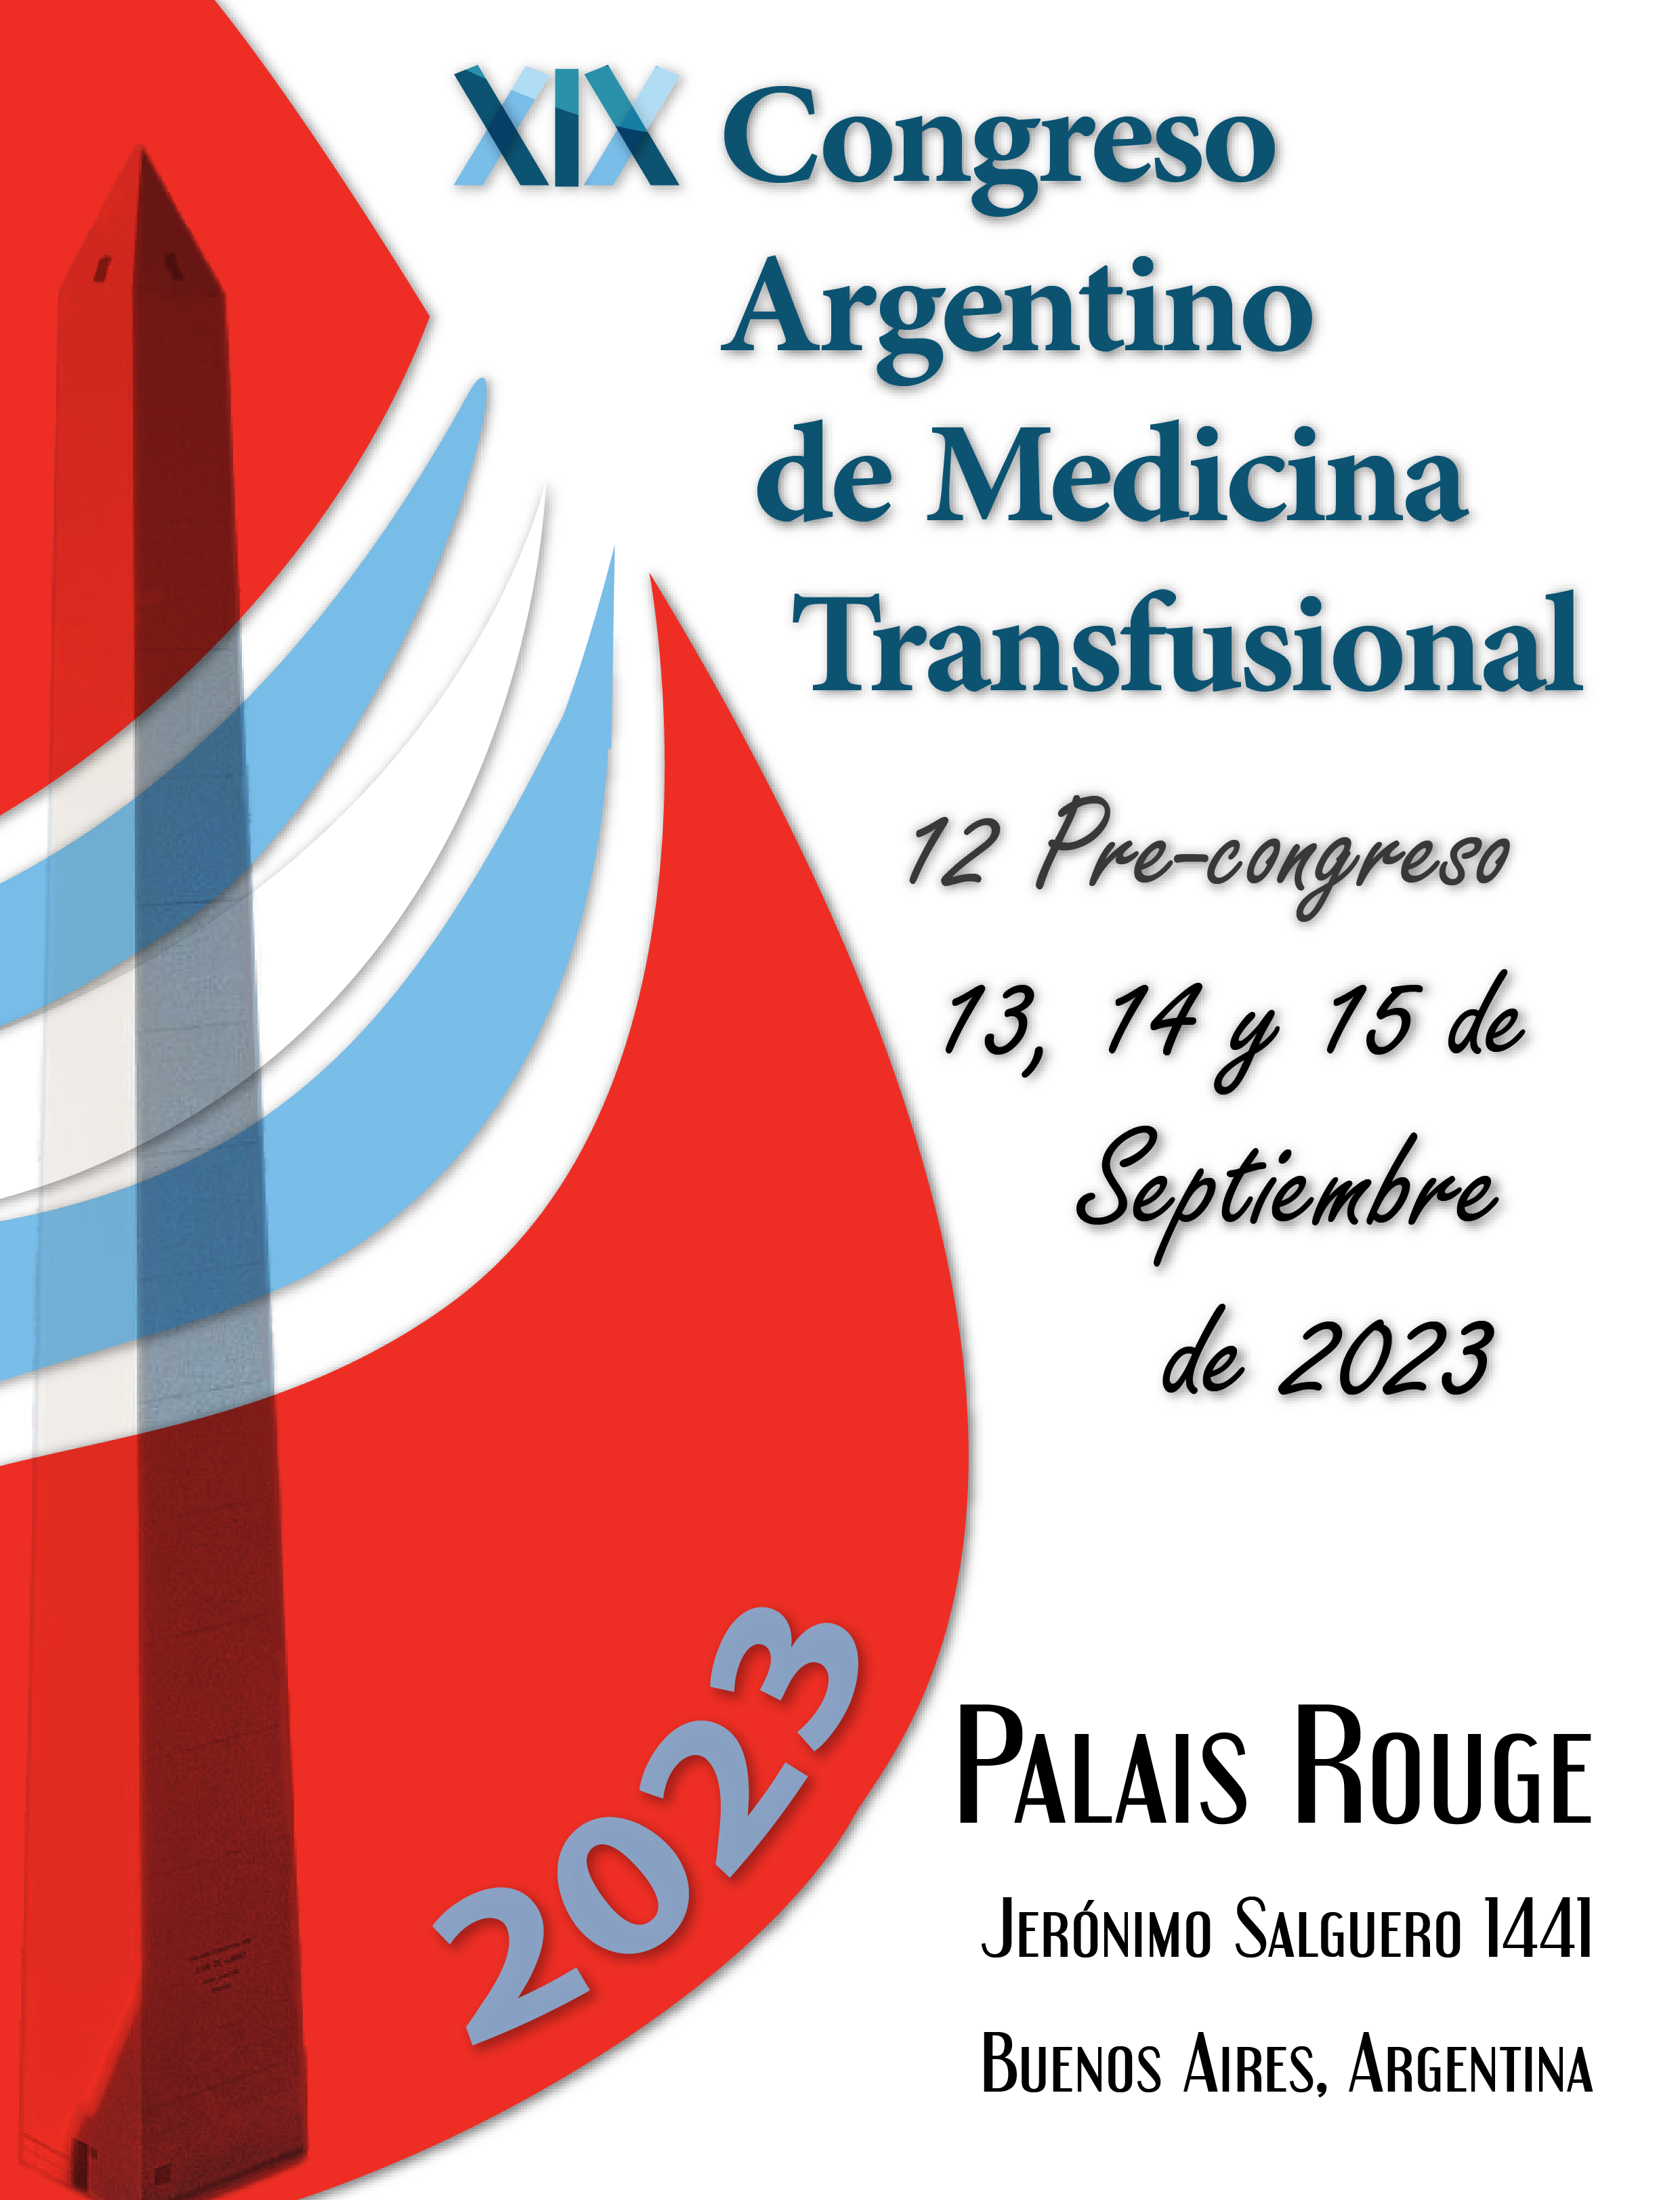 XIX Congreso Argentino de Medicina Transfusional